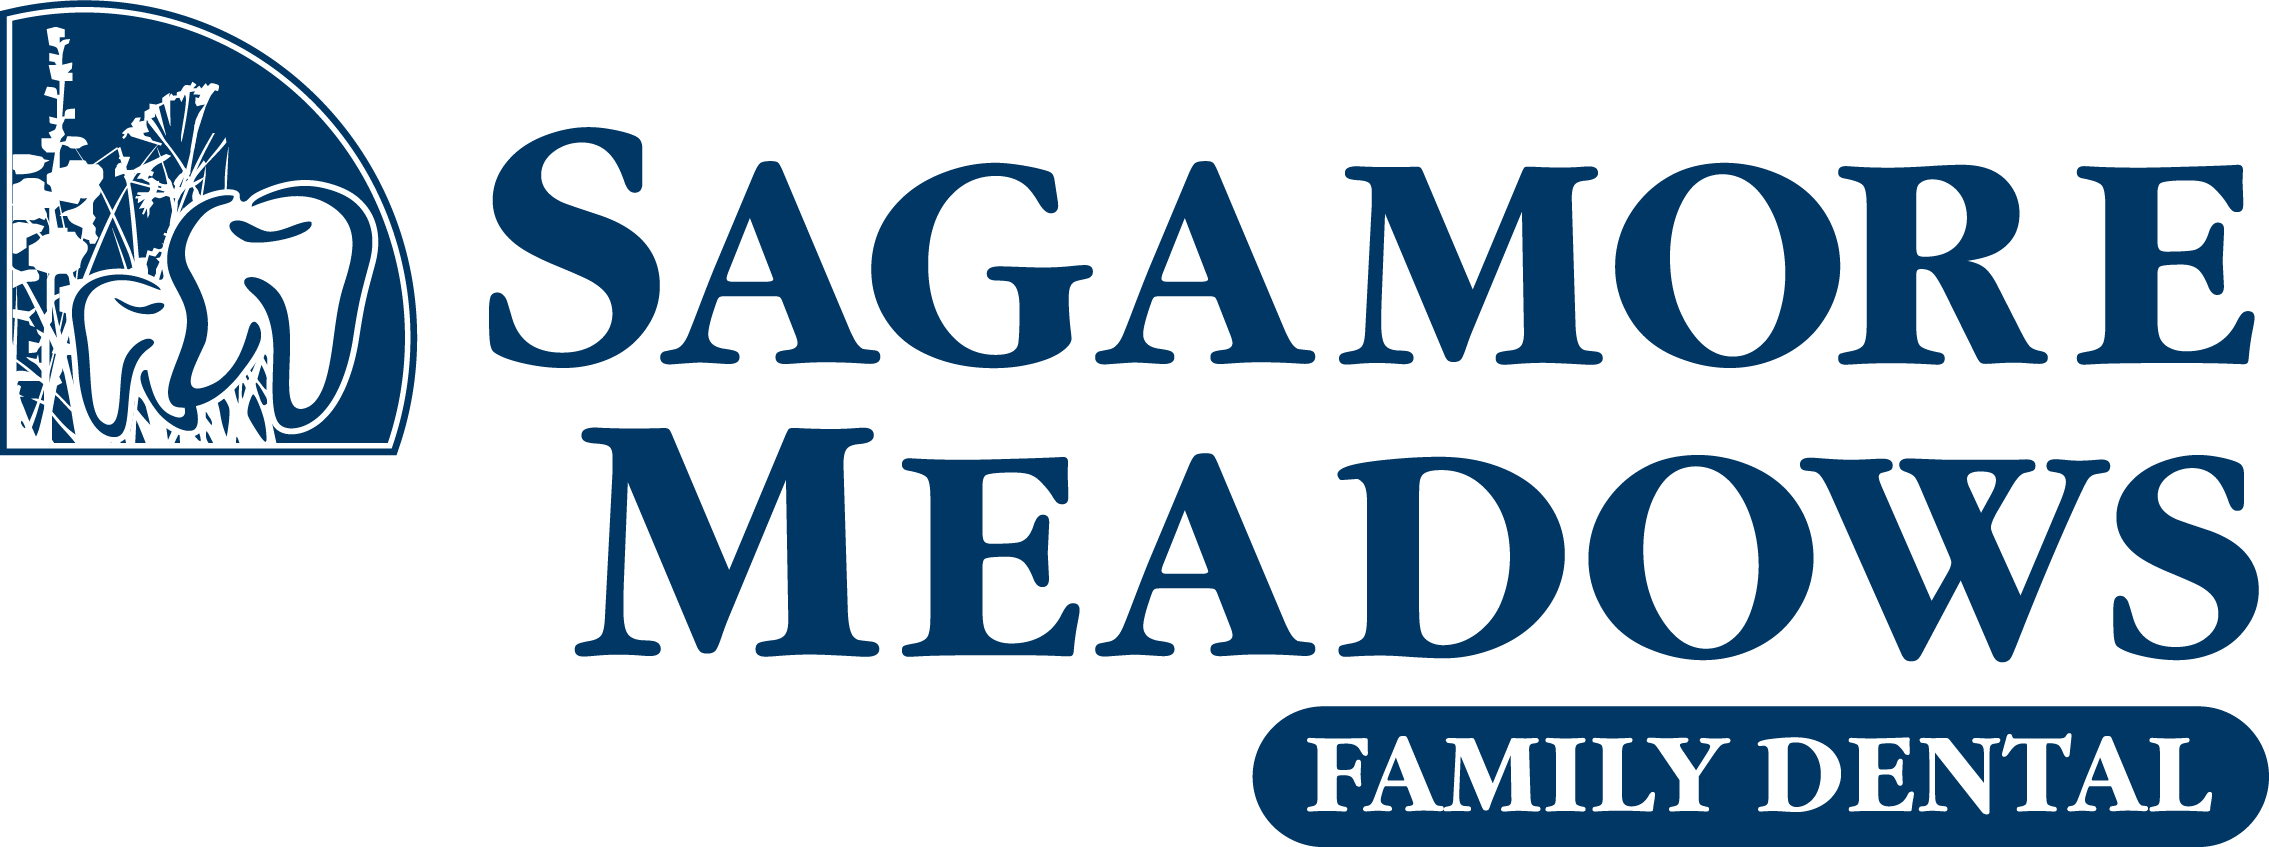 Sagamore Meadows Family Dental